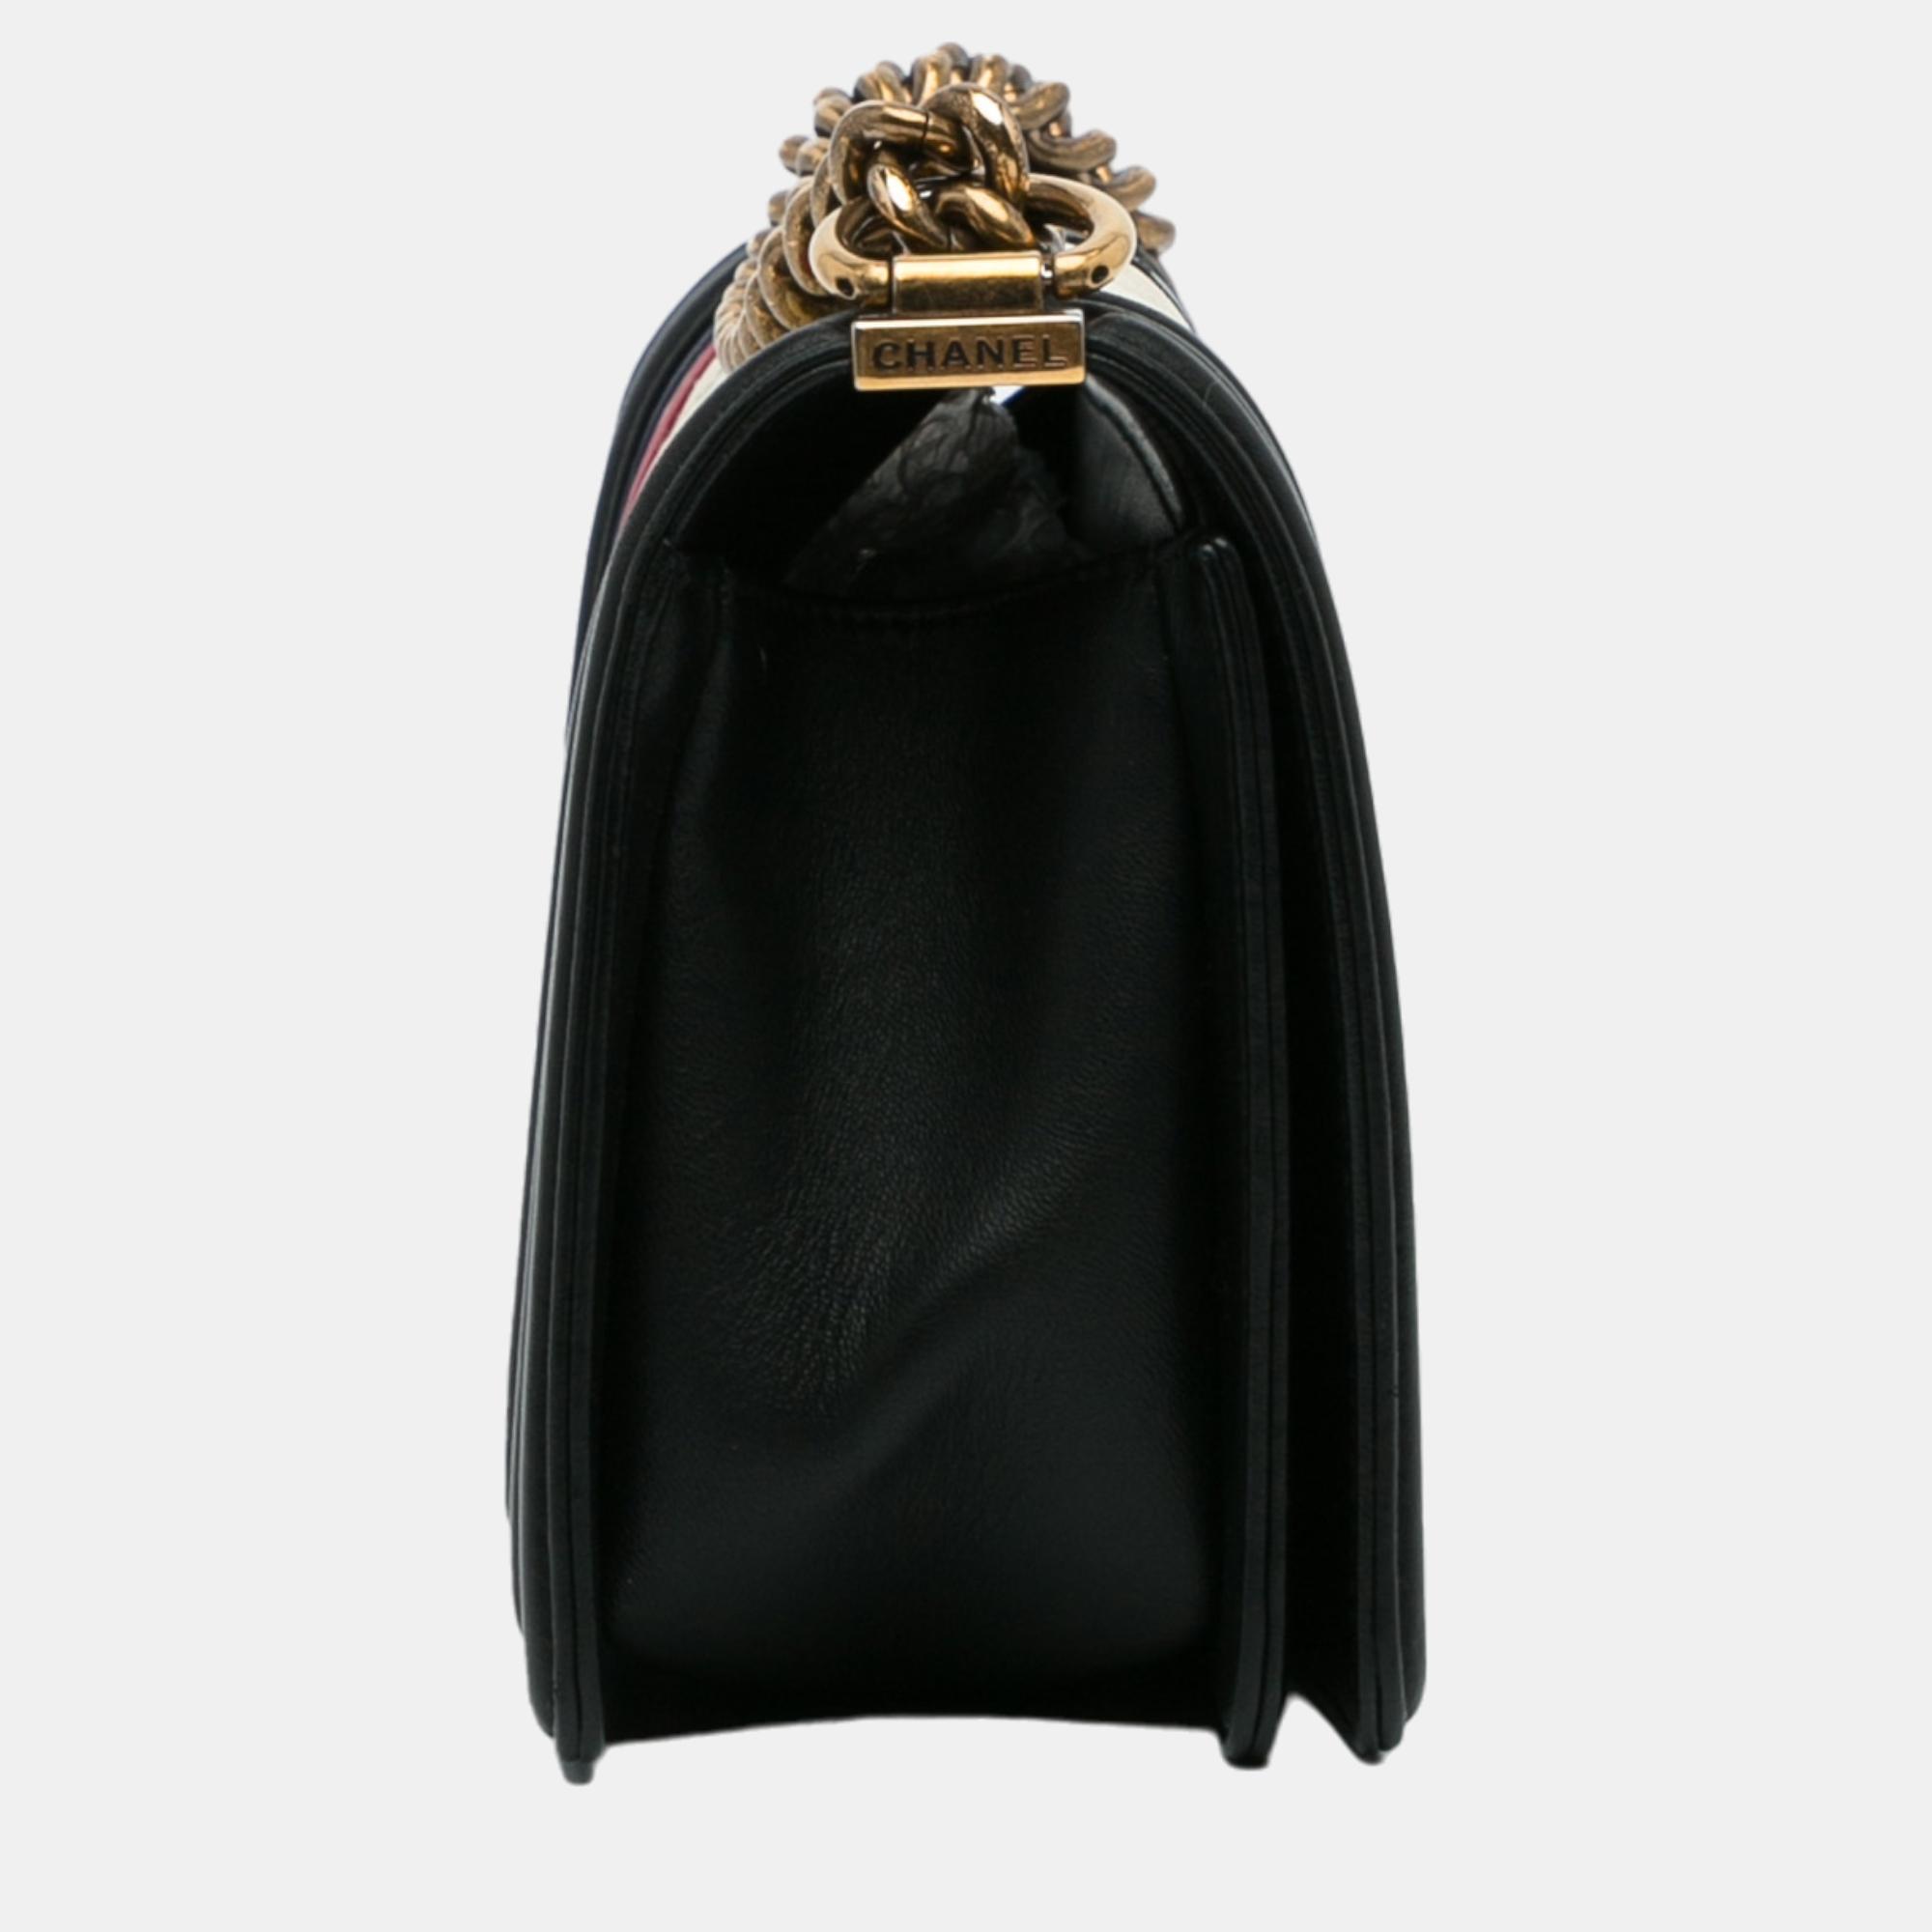 Chanel Black/White Crest-Embellished Medium Boy Bag